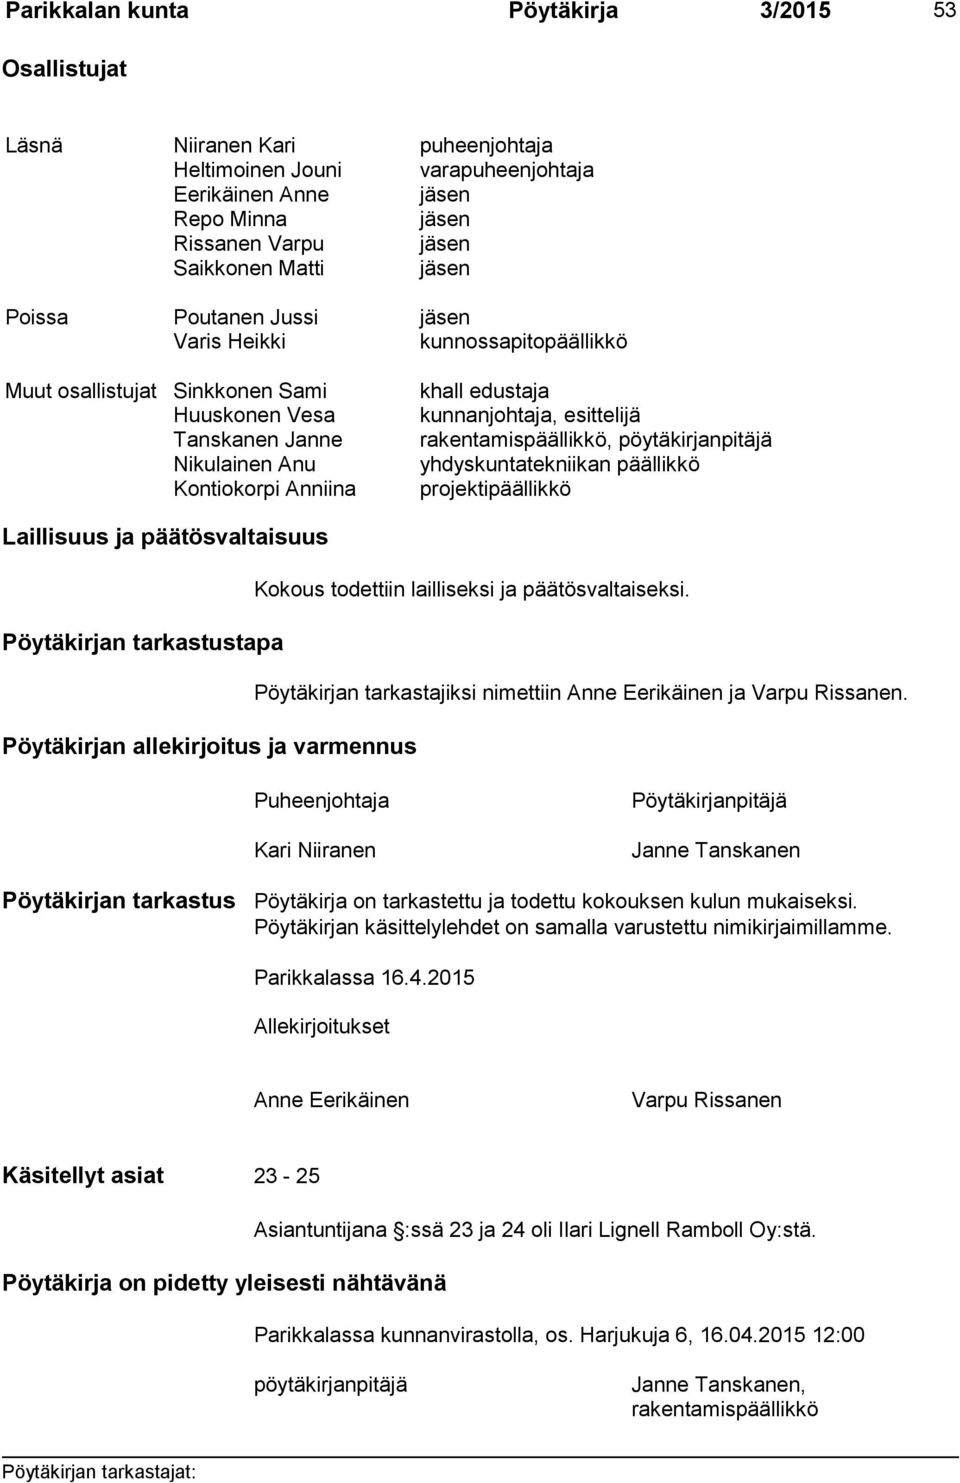 pöytäkirjanpitäjä Nikulainen Anu yhdyskuntatekniikan päällikkö Kontiokorpi Anniina projektipäällikkö Laillisuus ja päätösvaltaisuus Pöytäkirjan tarkastustapa Pöytäkirjan allekirjoitus ja varmennus